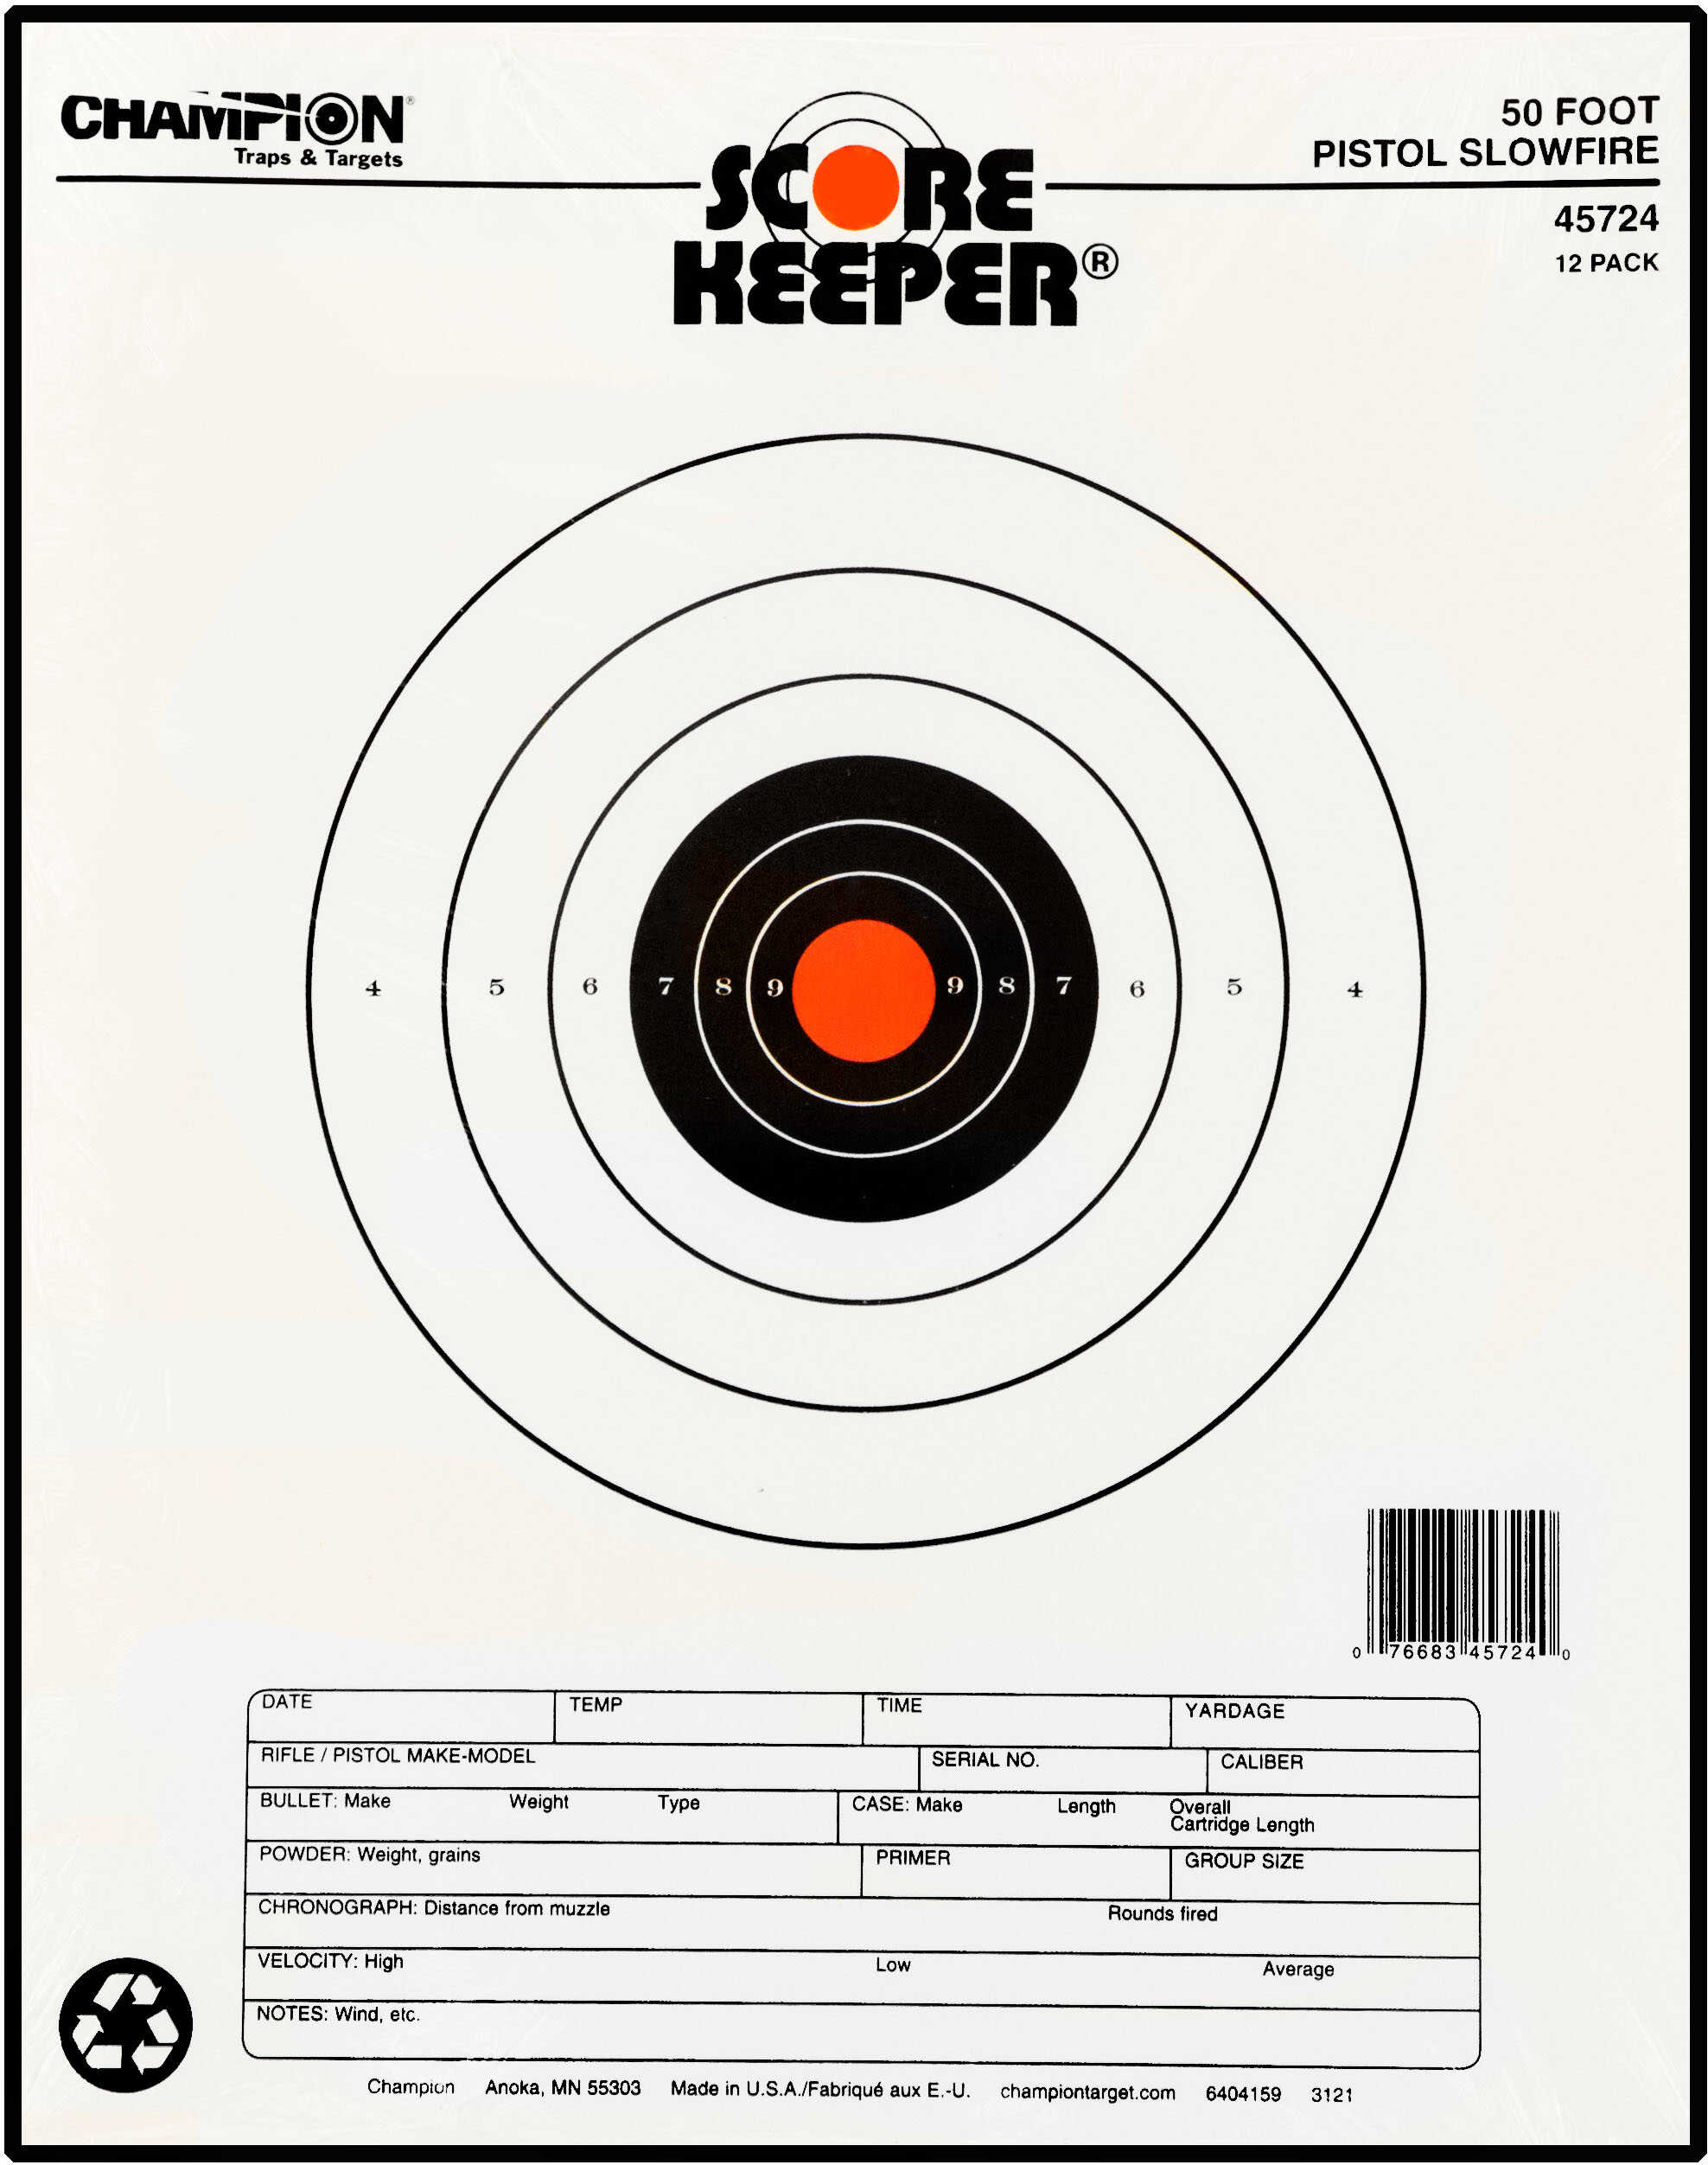 Champion Traps & Targets Orange Bullseye Scorekeeper 50 Feet Pistol Slow Fire 12 Pack 45724